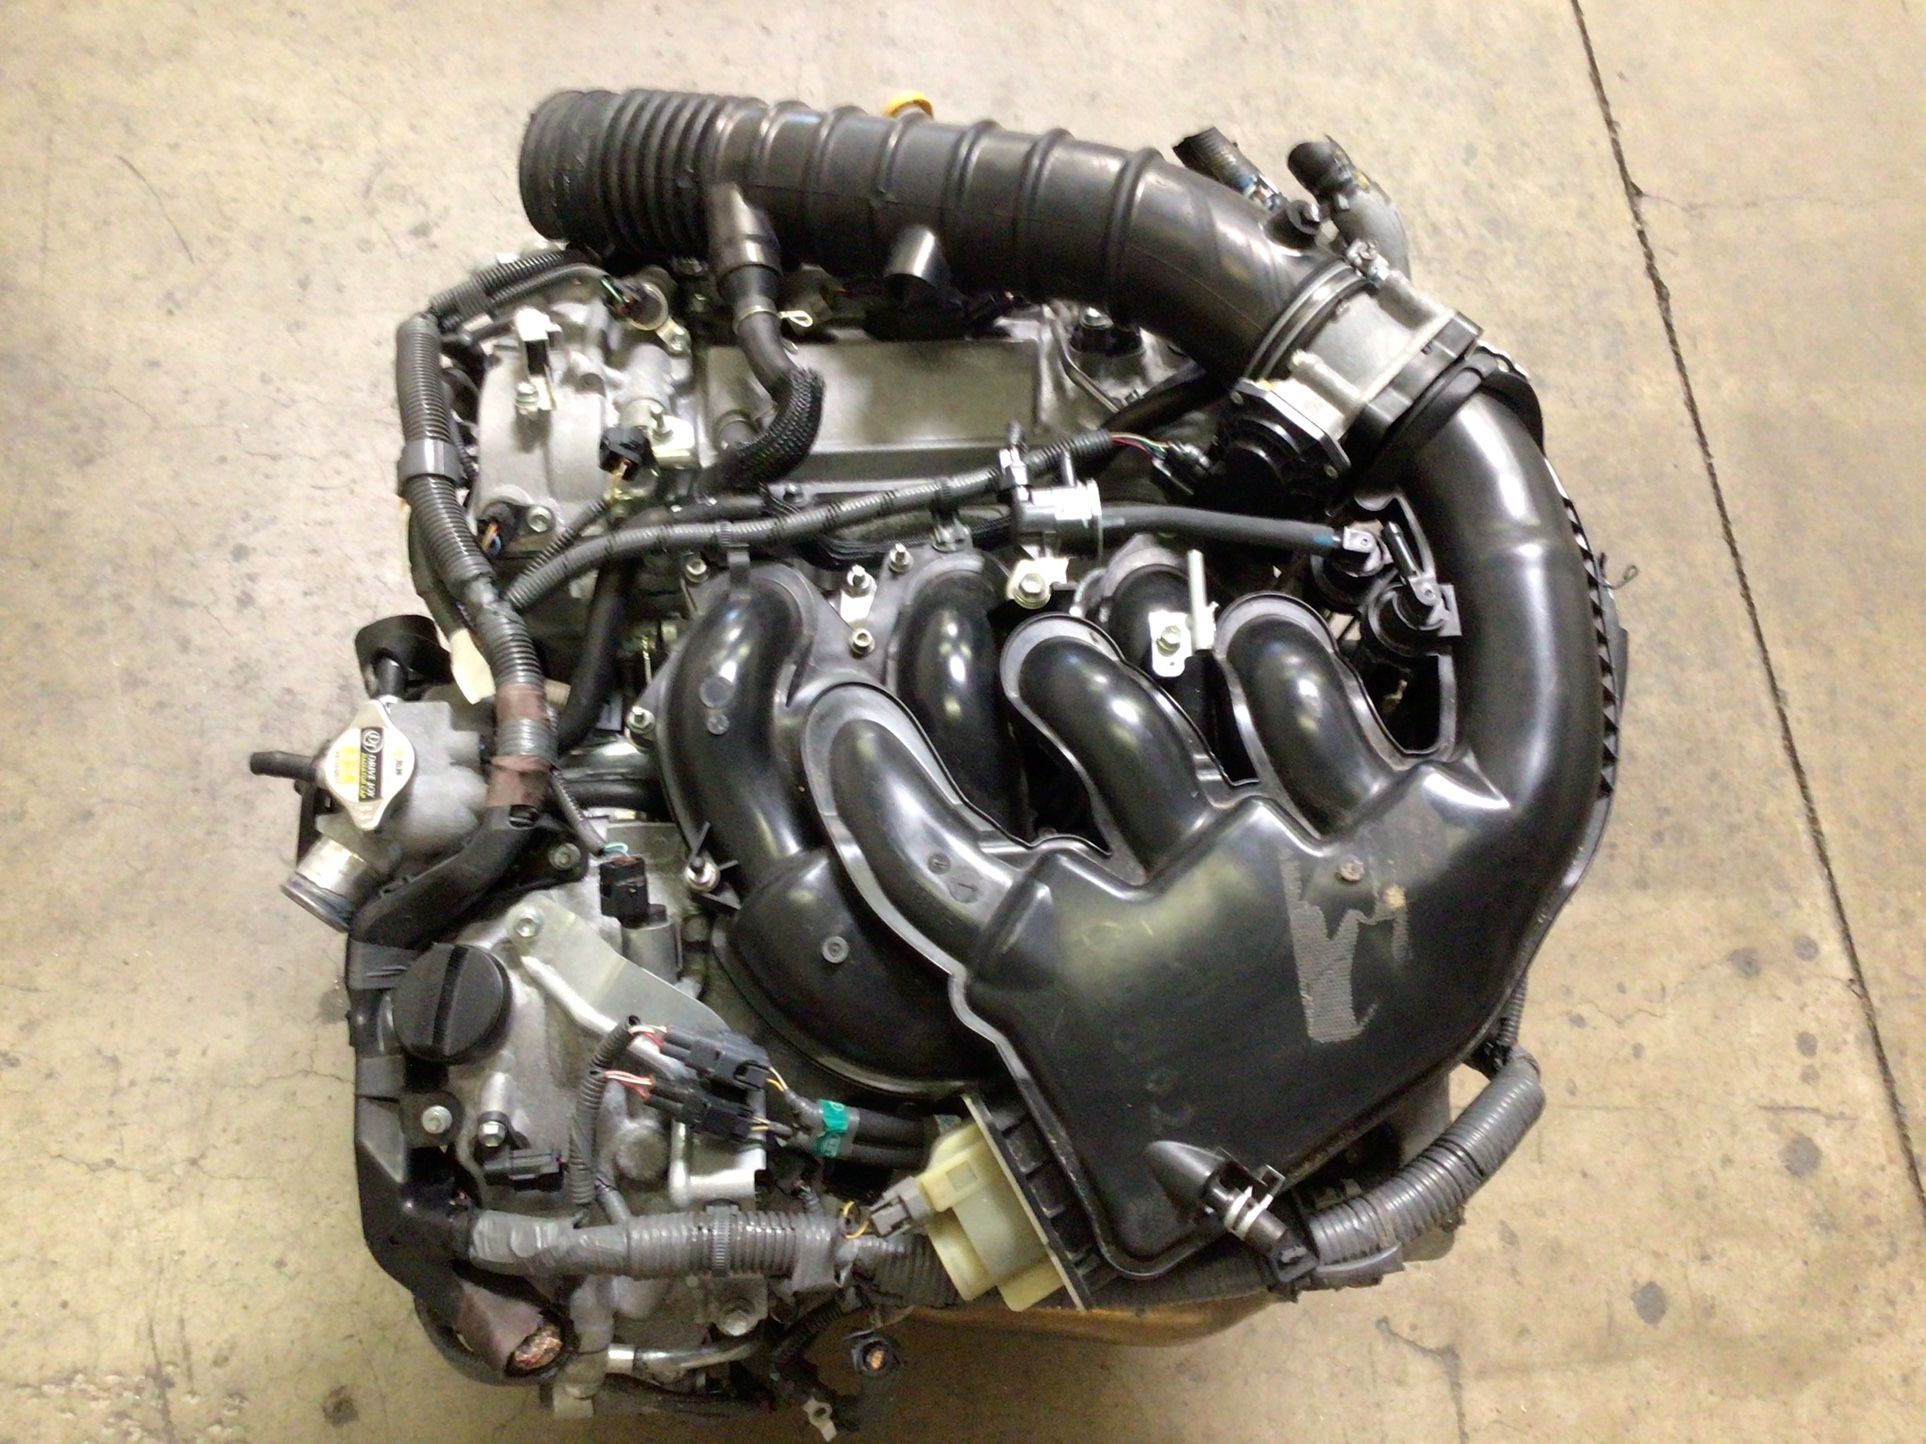 JDM 4GR FSE 2.5L V6 LEXUS IS250 Engine 06-12